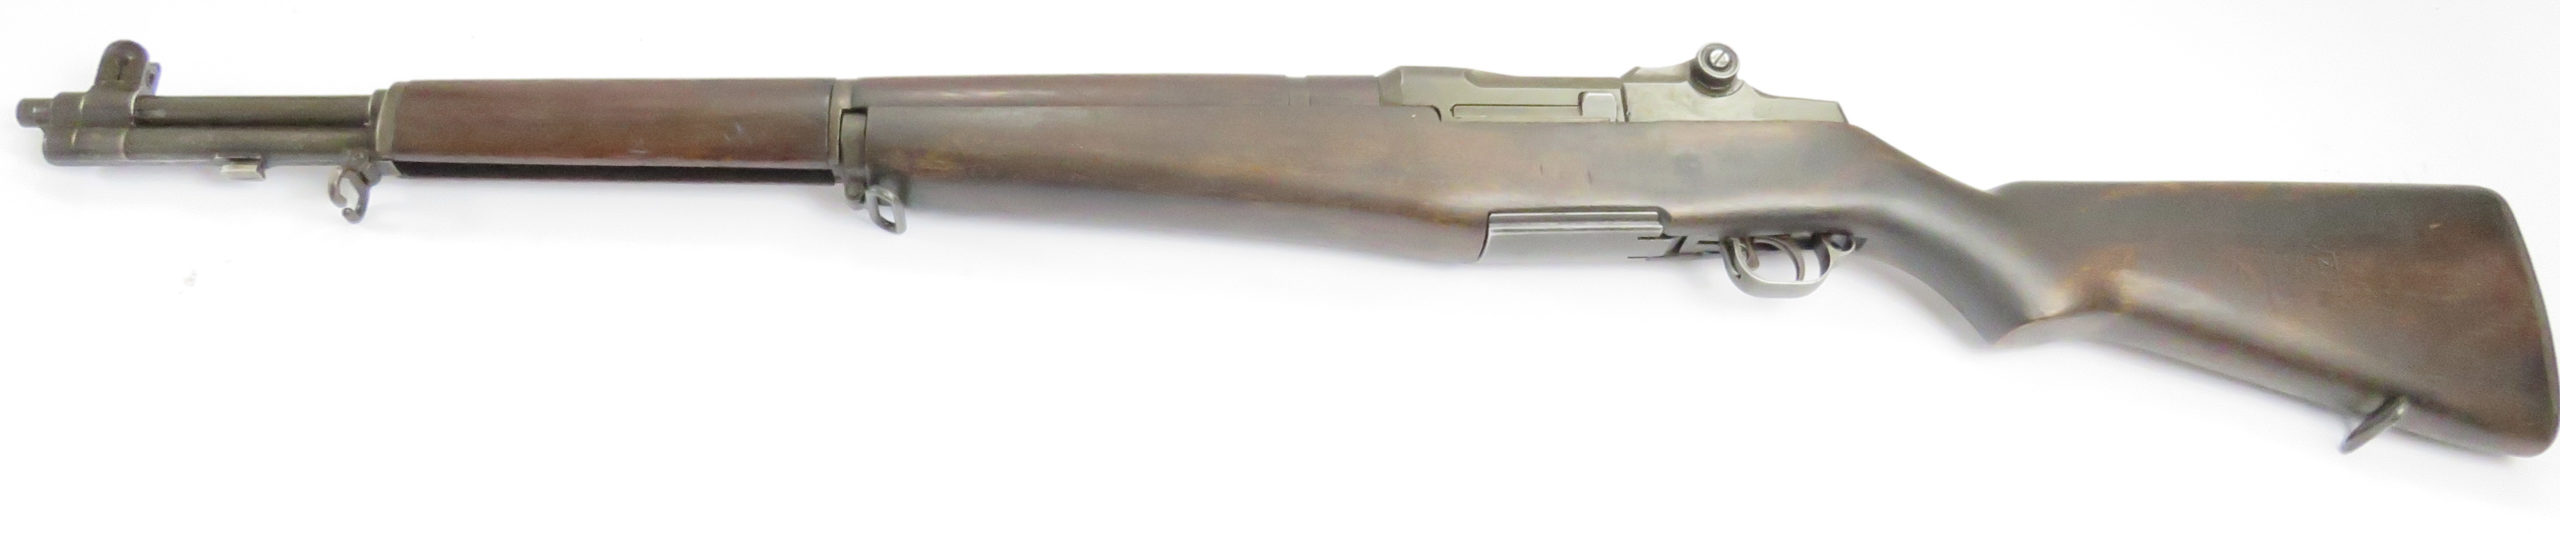 GARAND SPRINGFIELD Armory M1 calibre .308W